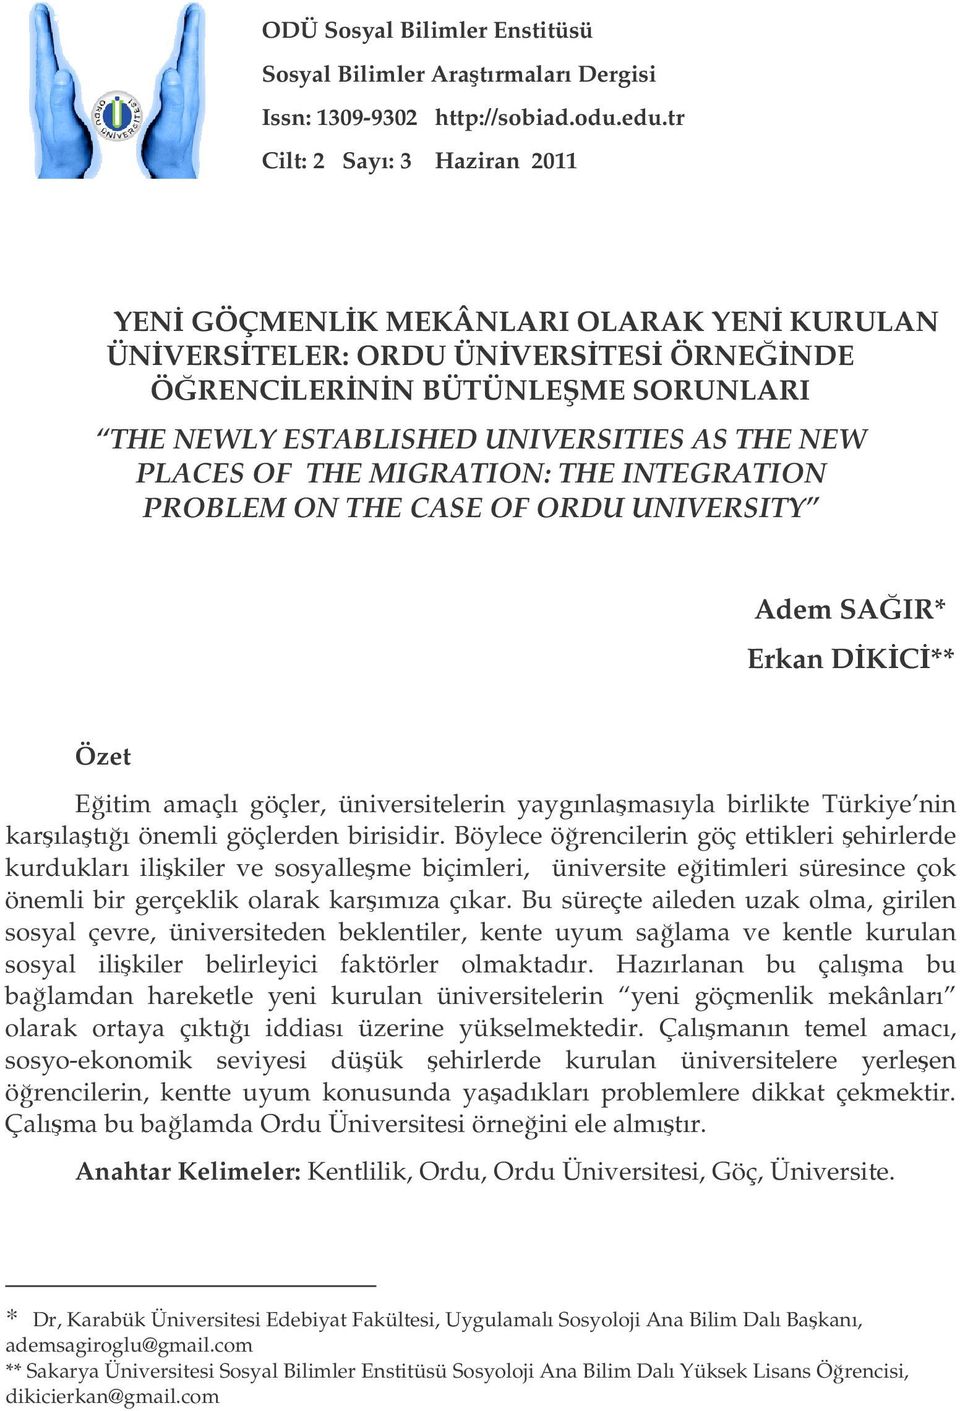 THE MIGRATION: THE INTEGRATION PROBLEM ON THE CASE OF ORDU UNIVERSITY Adem SAIR* Erkan DKC** Özet Eitim amaçlı göçler, üniversitelerin yaygınlamasıyla birlikte Türkiye nin karılatıı önemli göçlerden